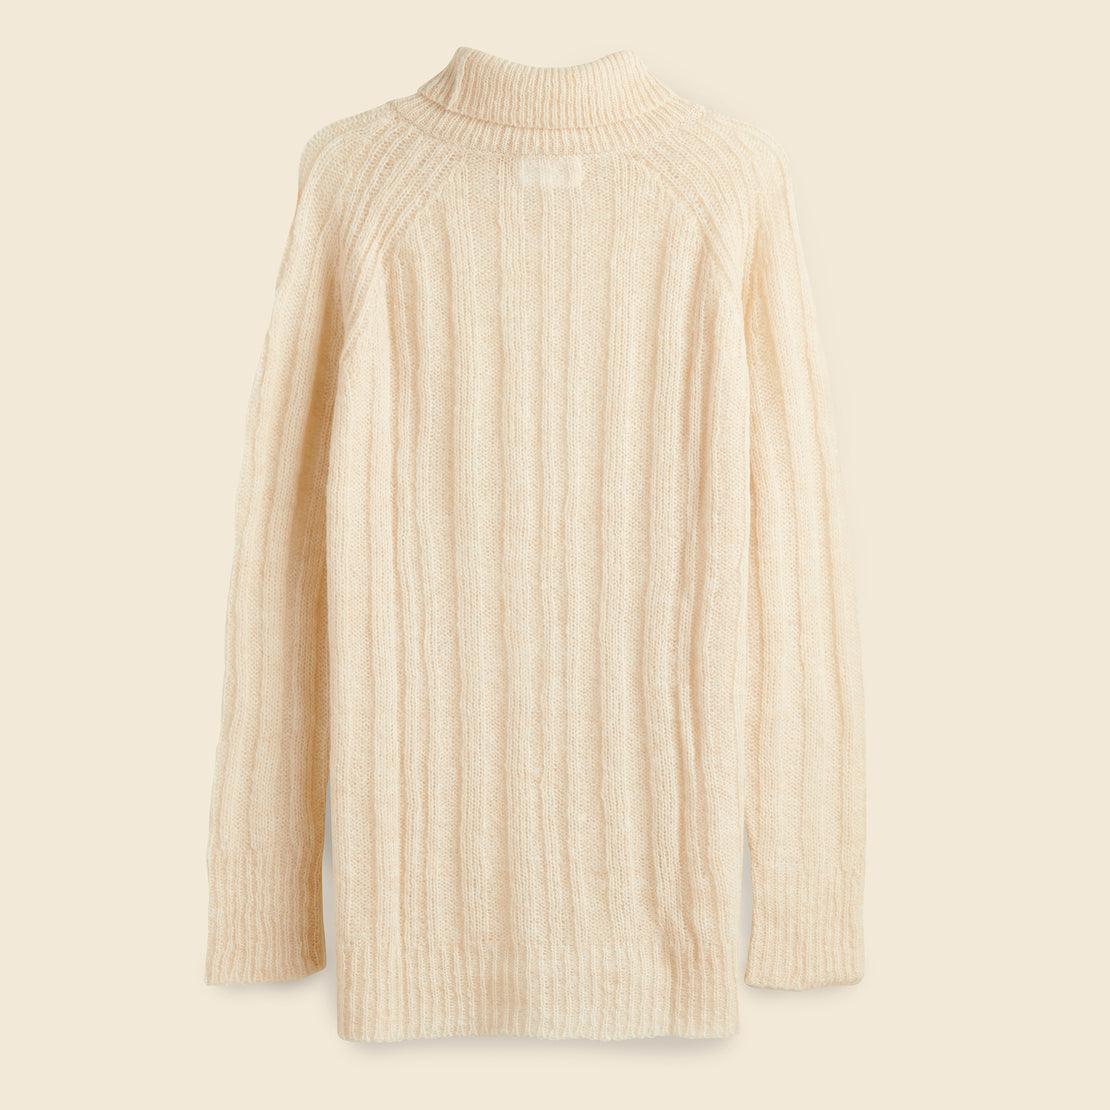 Vera Sweater - Cream - Atelier Delphine - STAG Provisions - W - Tops - Sweater